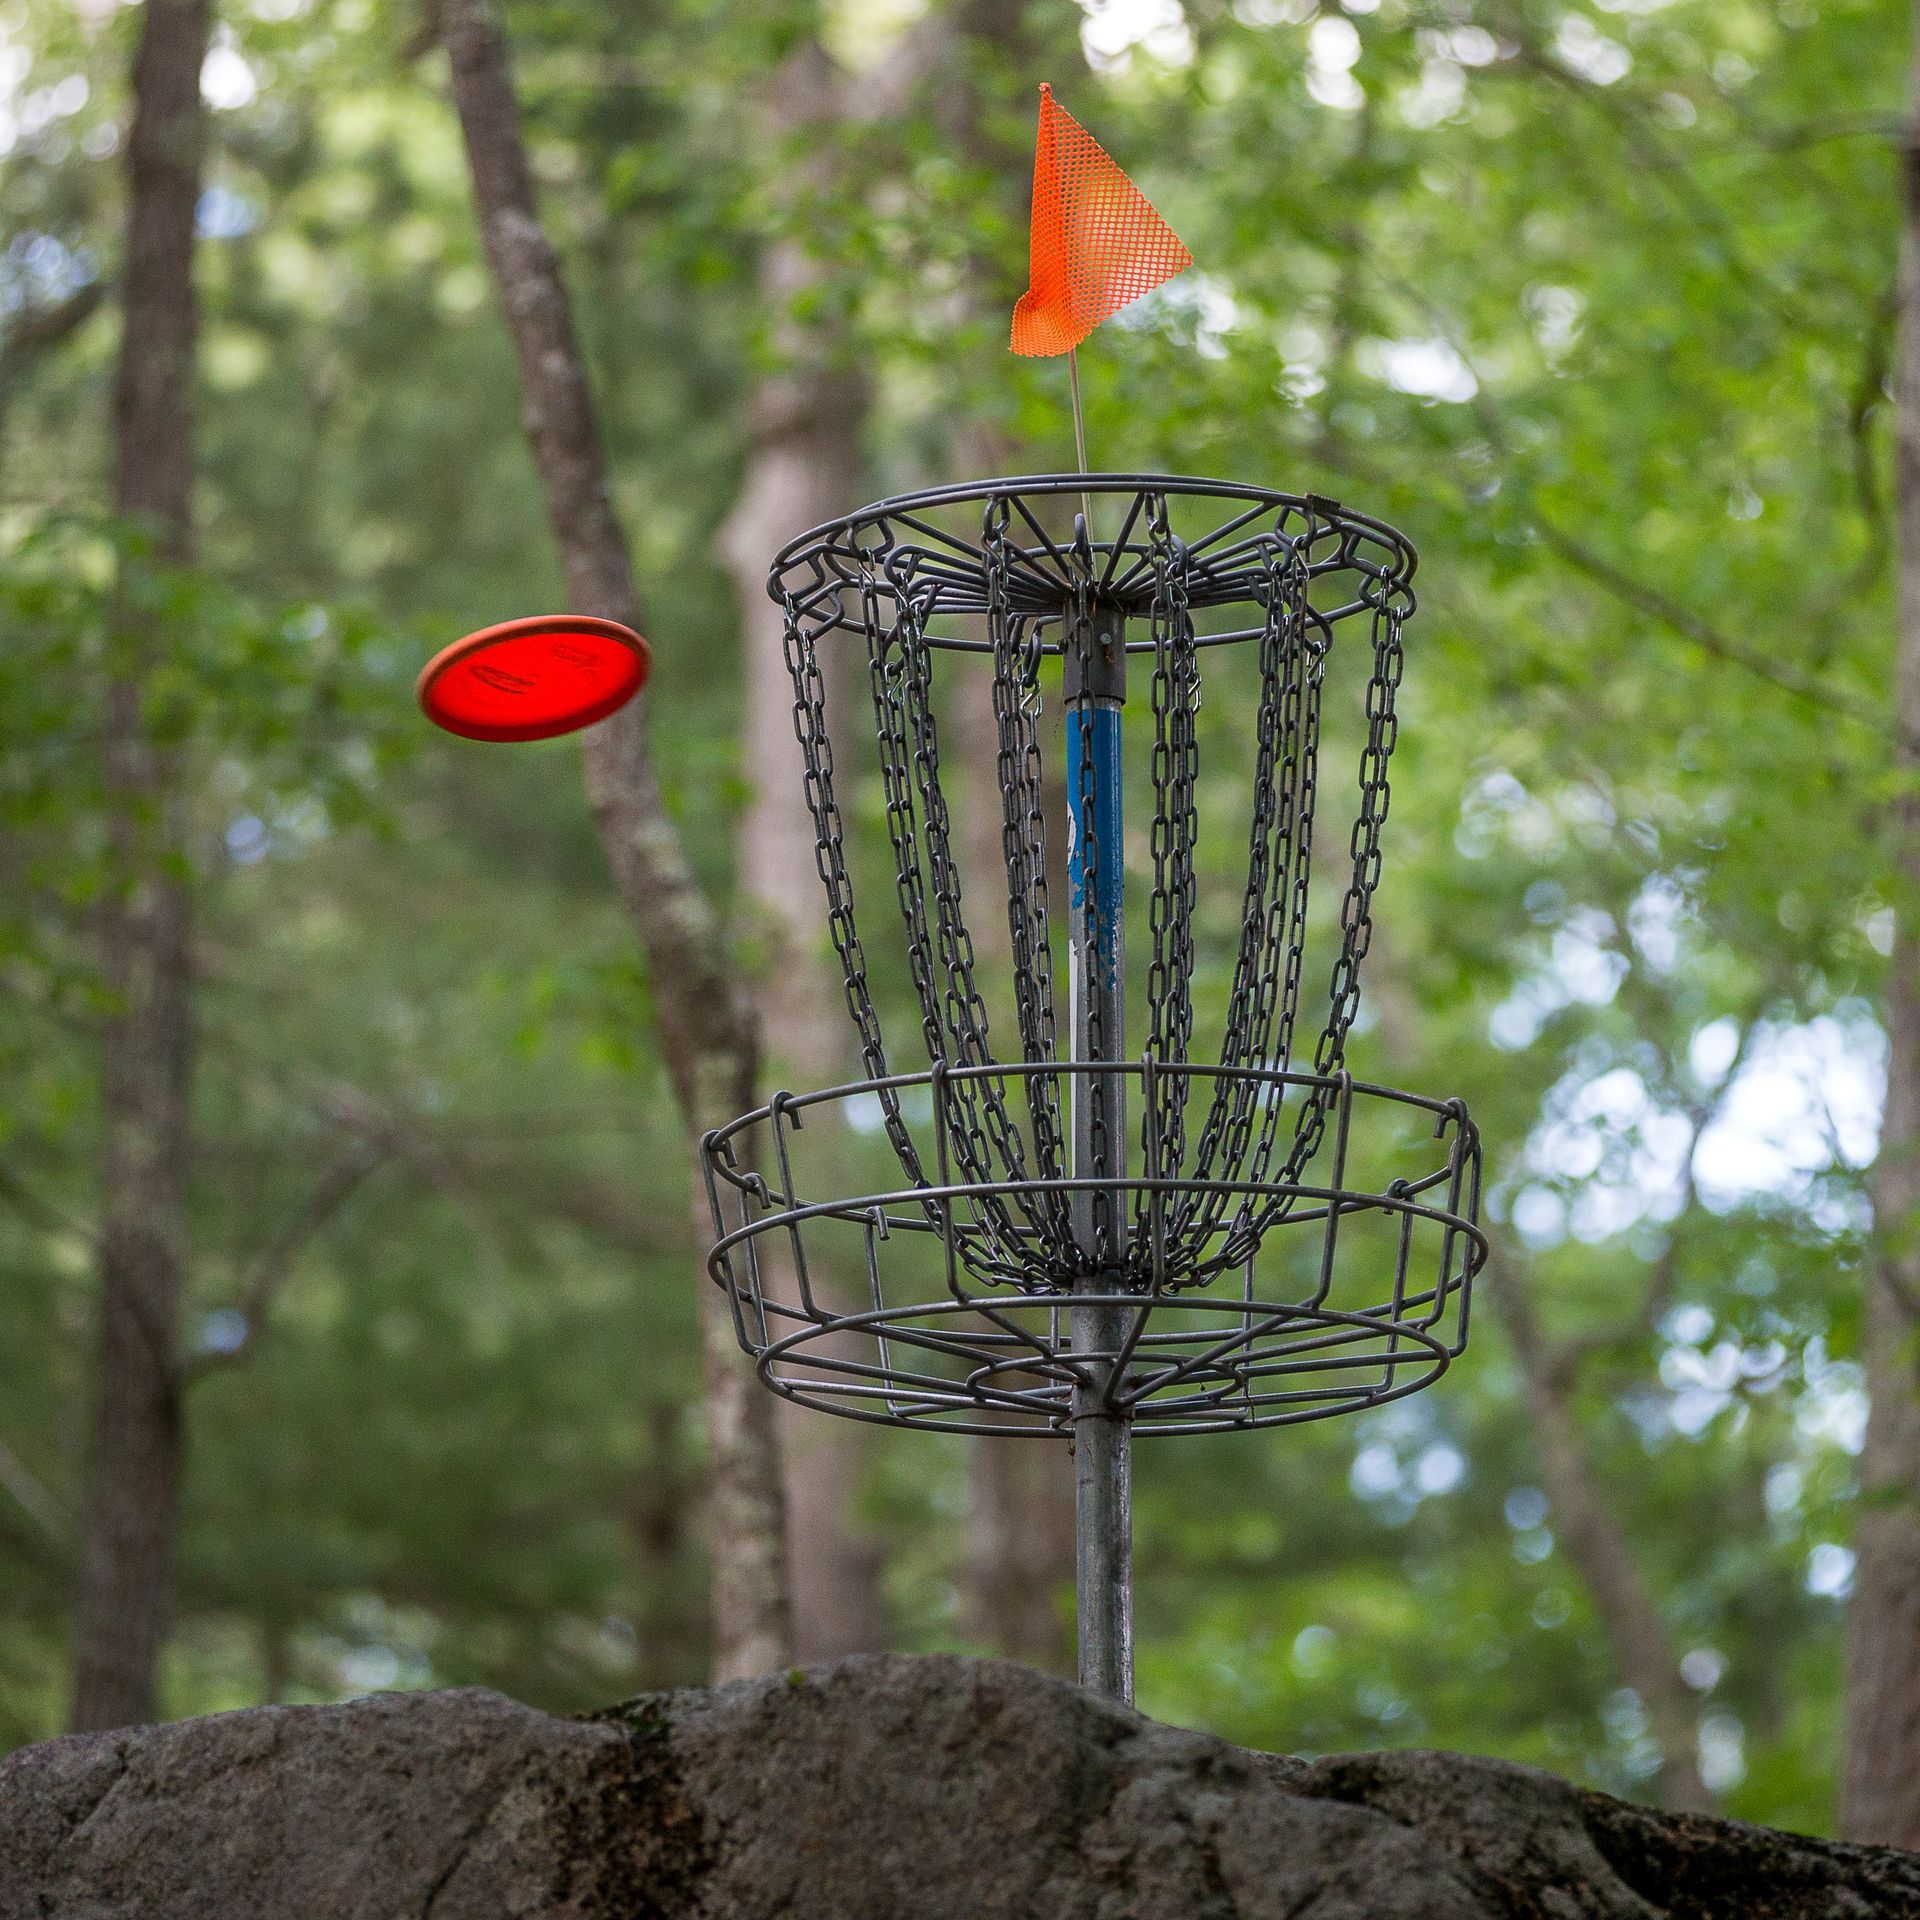 A red disc flies into a disc golf basket